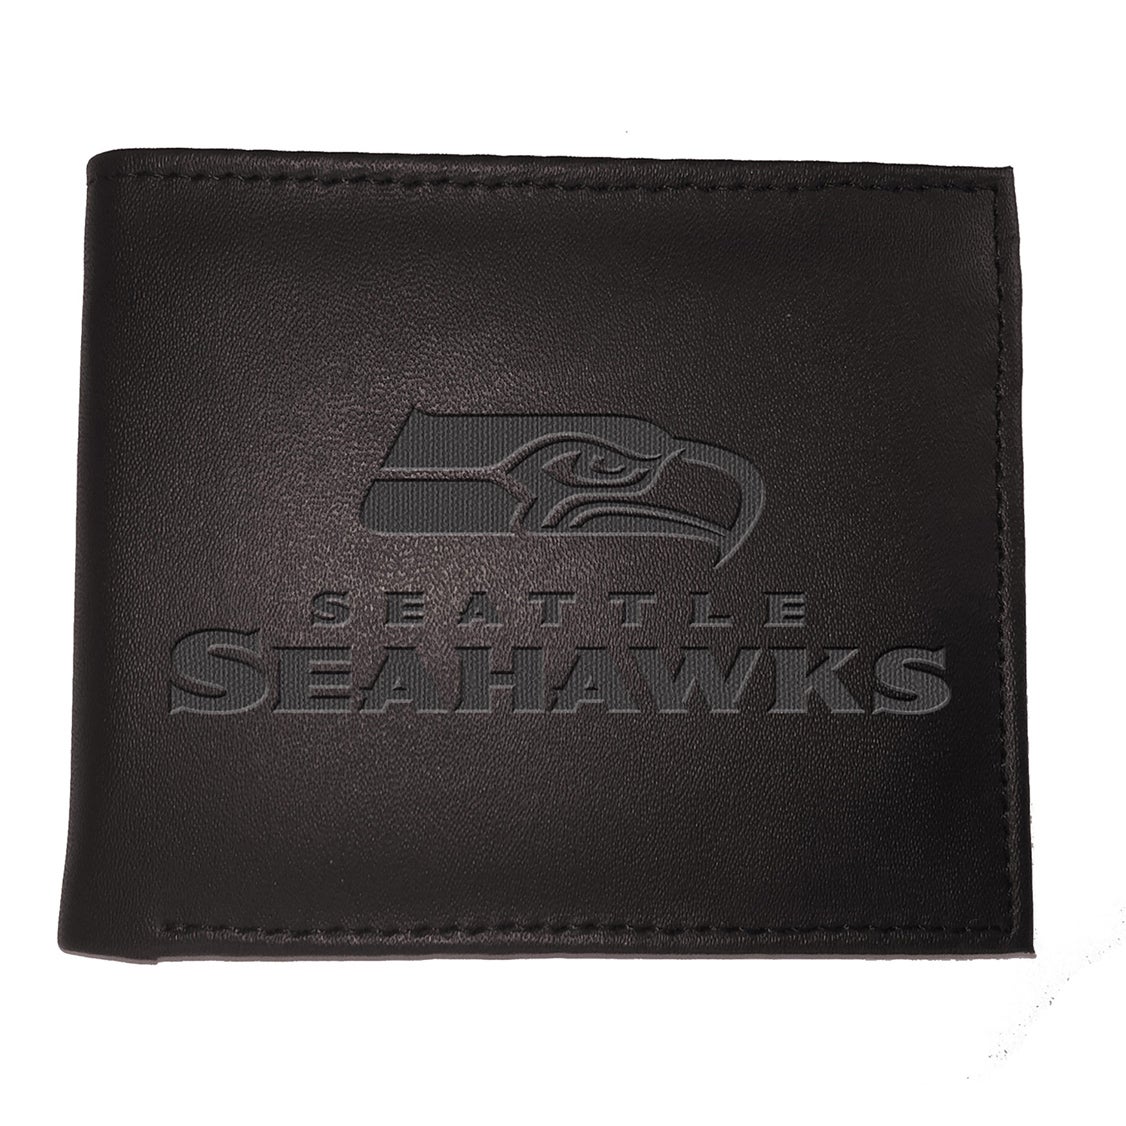 Seattle Seahawks Bi-Fold Leather Wallet